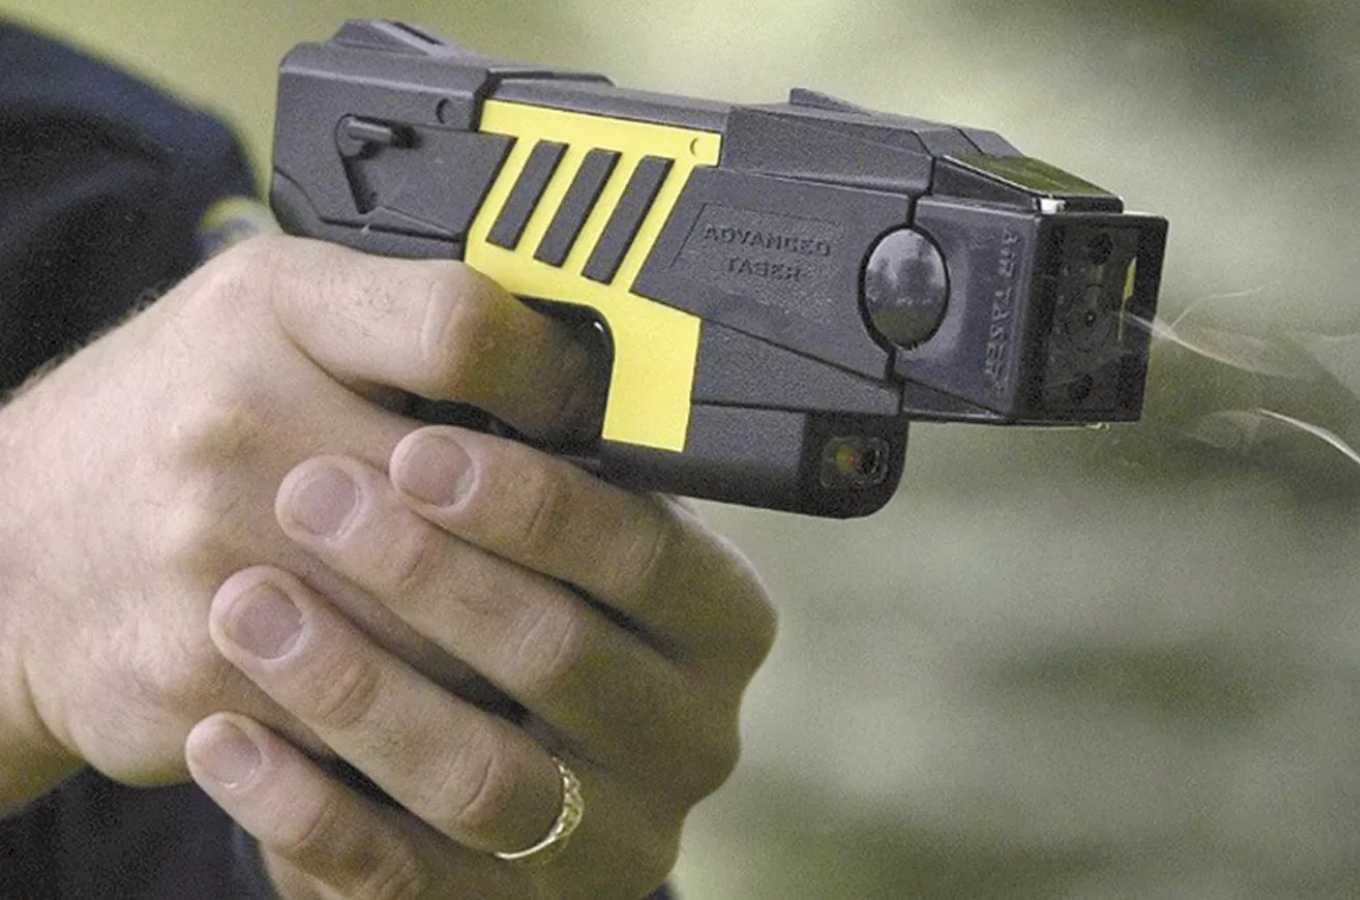 El uso de pistolas Taser podría comenzar en dos meses - EntreMedios